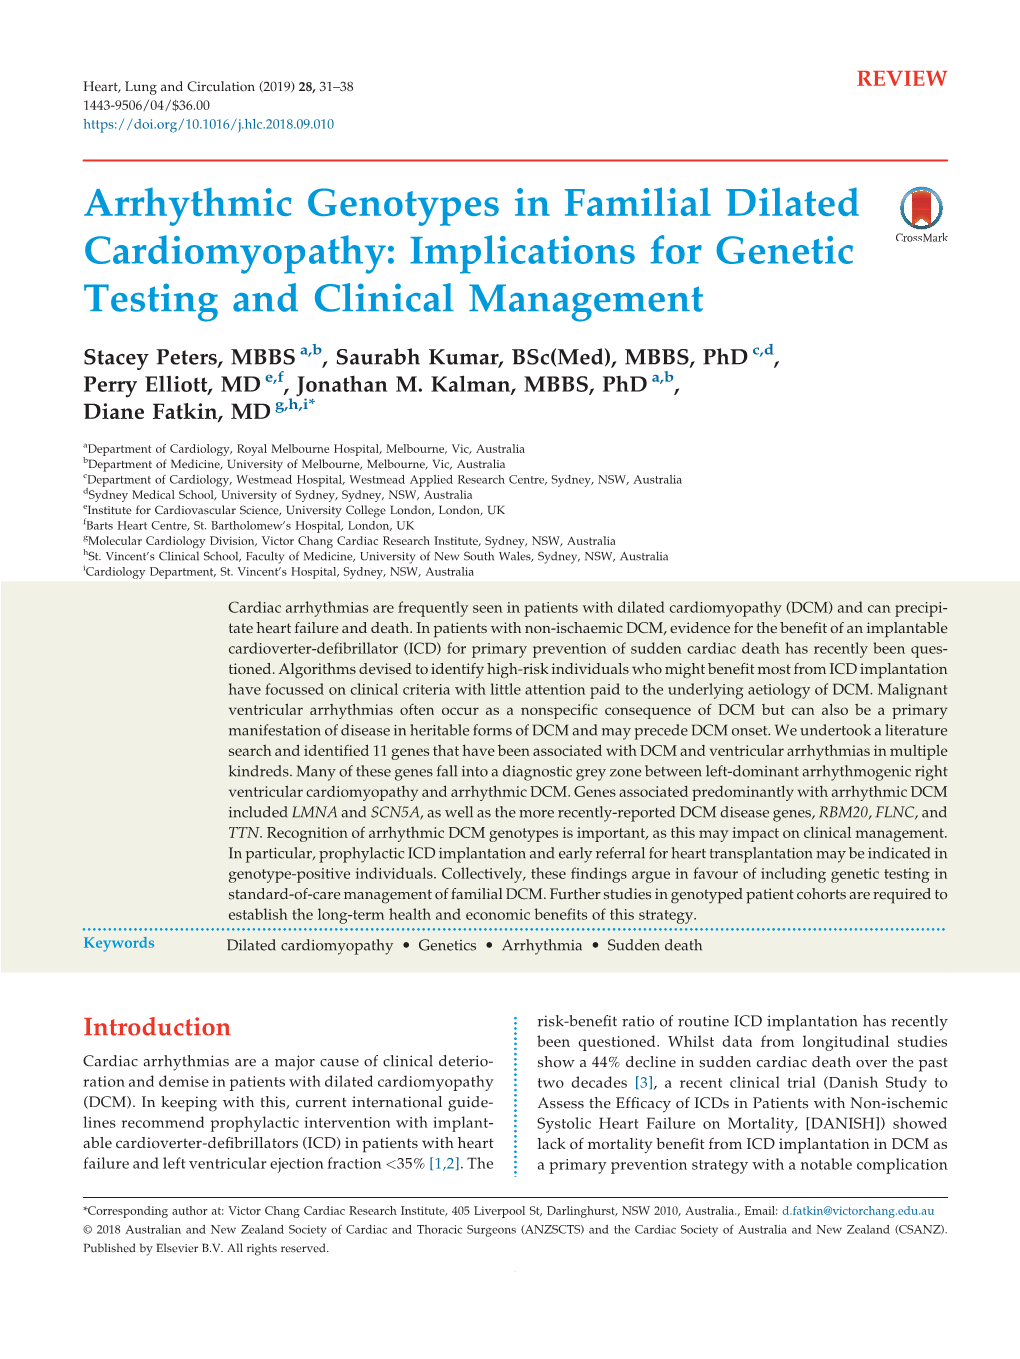 Arrhythmic Genotypes in Familial Dilated Cardiomyopathy 33